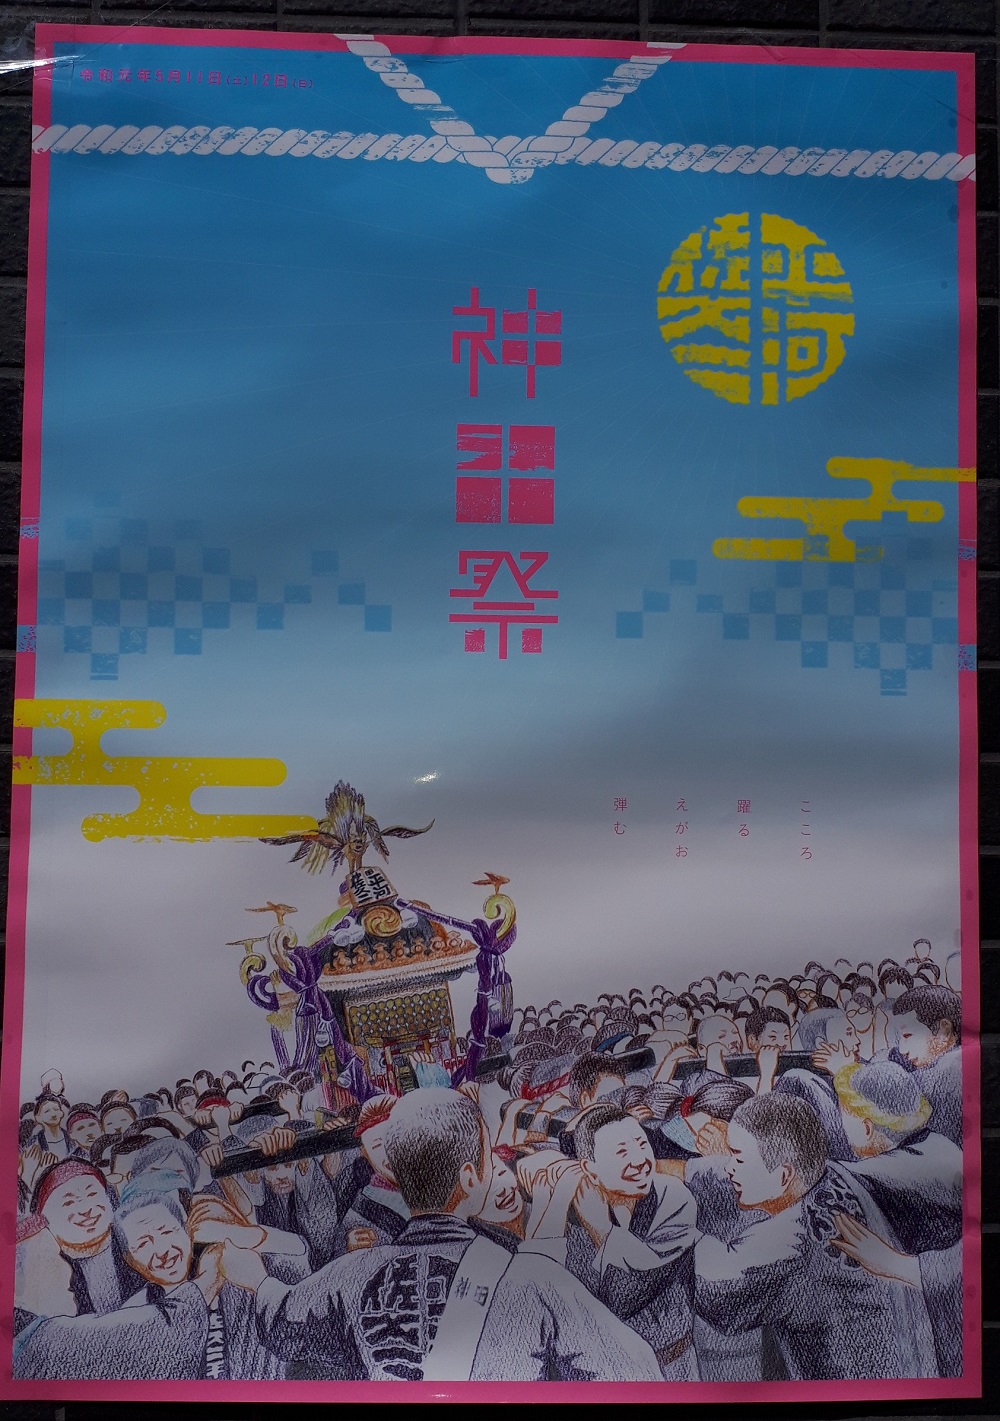 千代田区側のポスターは 神田祭とポスターあれこれ